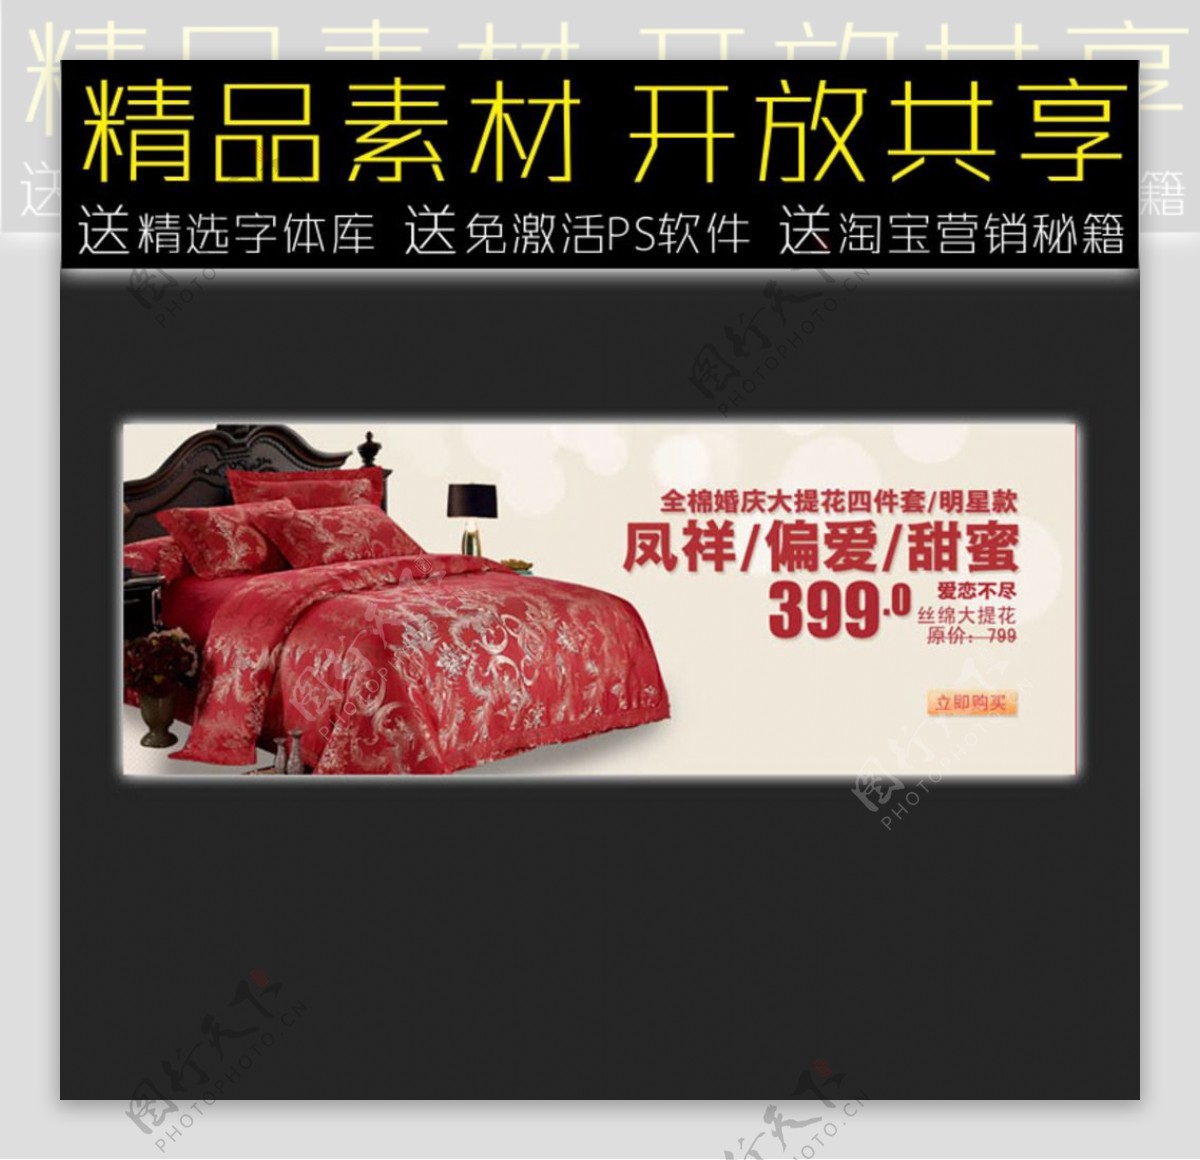 床上用品网店促销广告模板图片